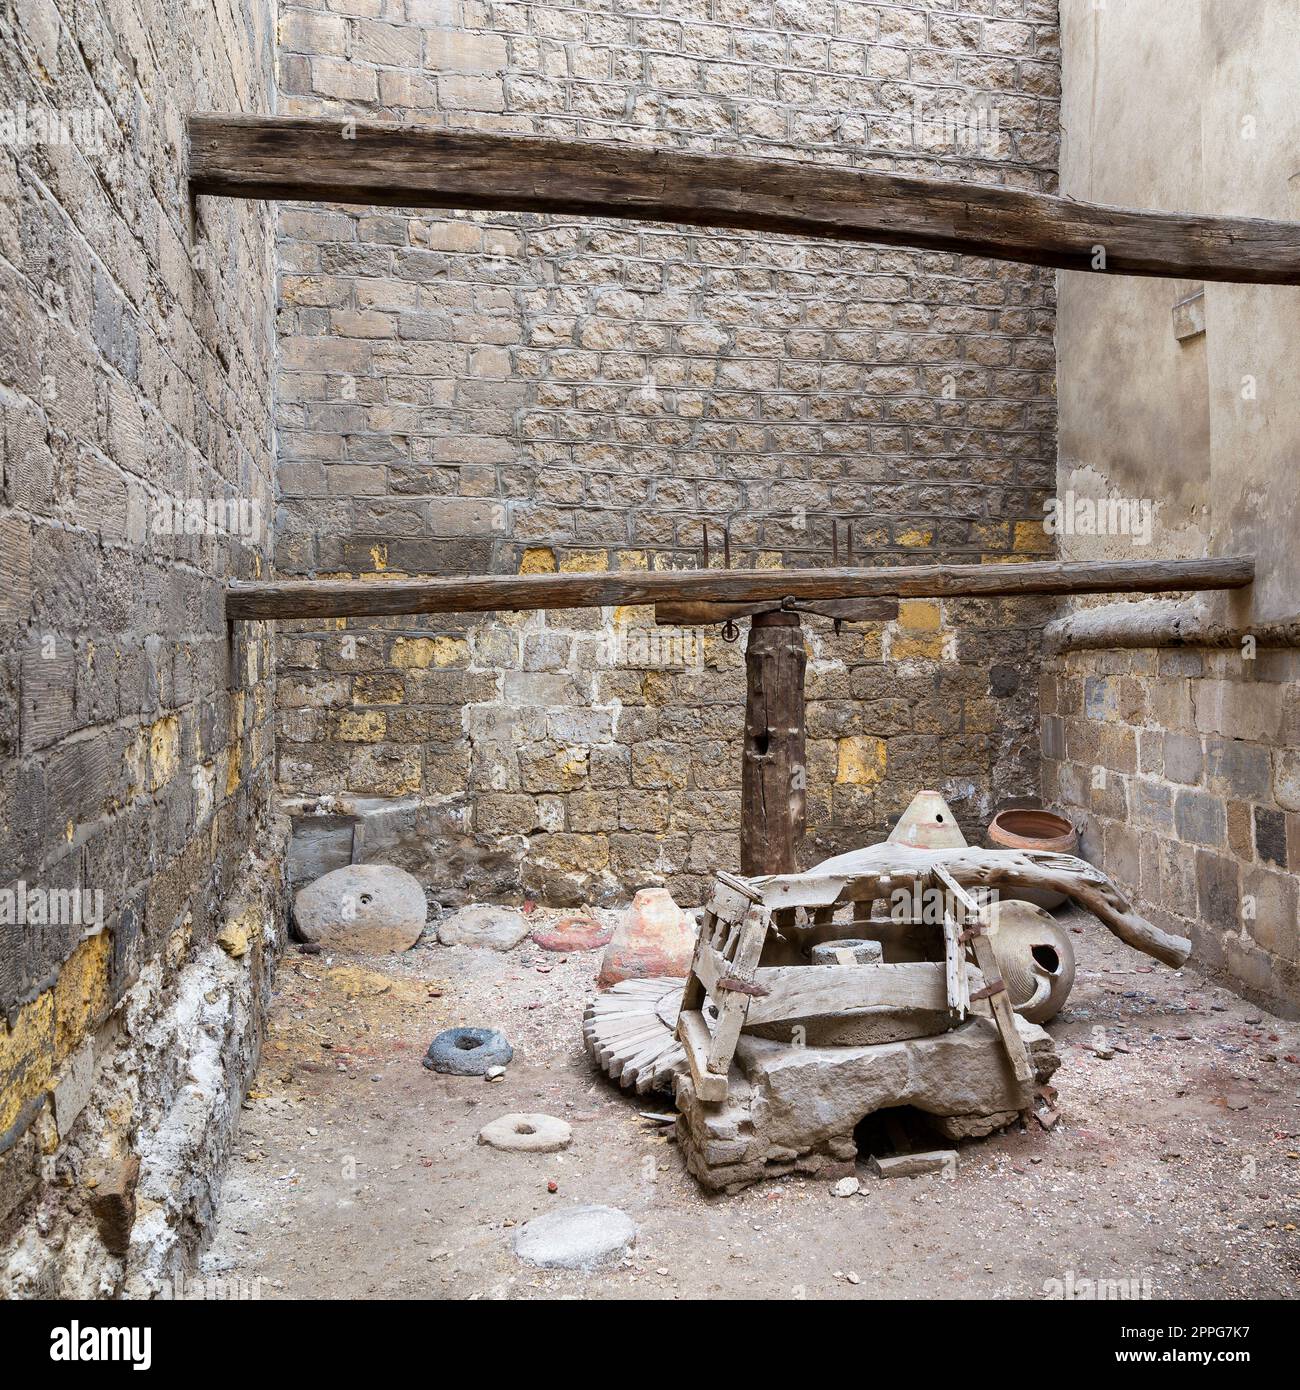 Mulino rotativo in rovina, situato presso la casa di El Sehemy, epoca ottomana, via Moez, Cairo, Egitto Foto Stock